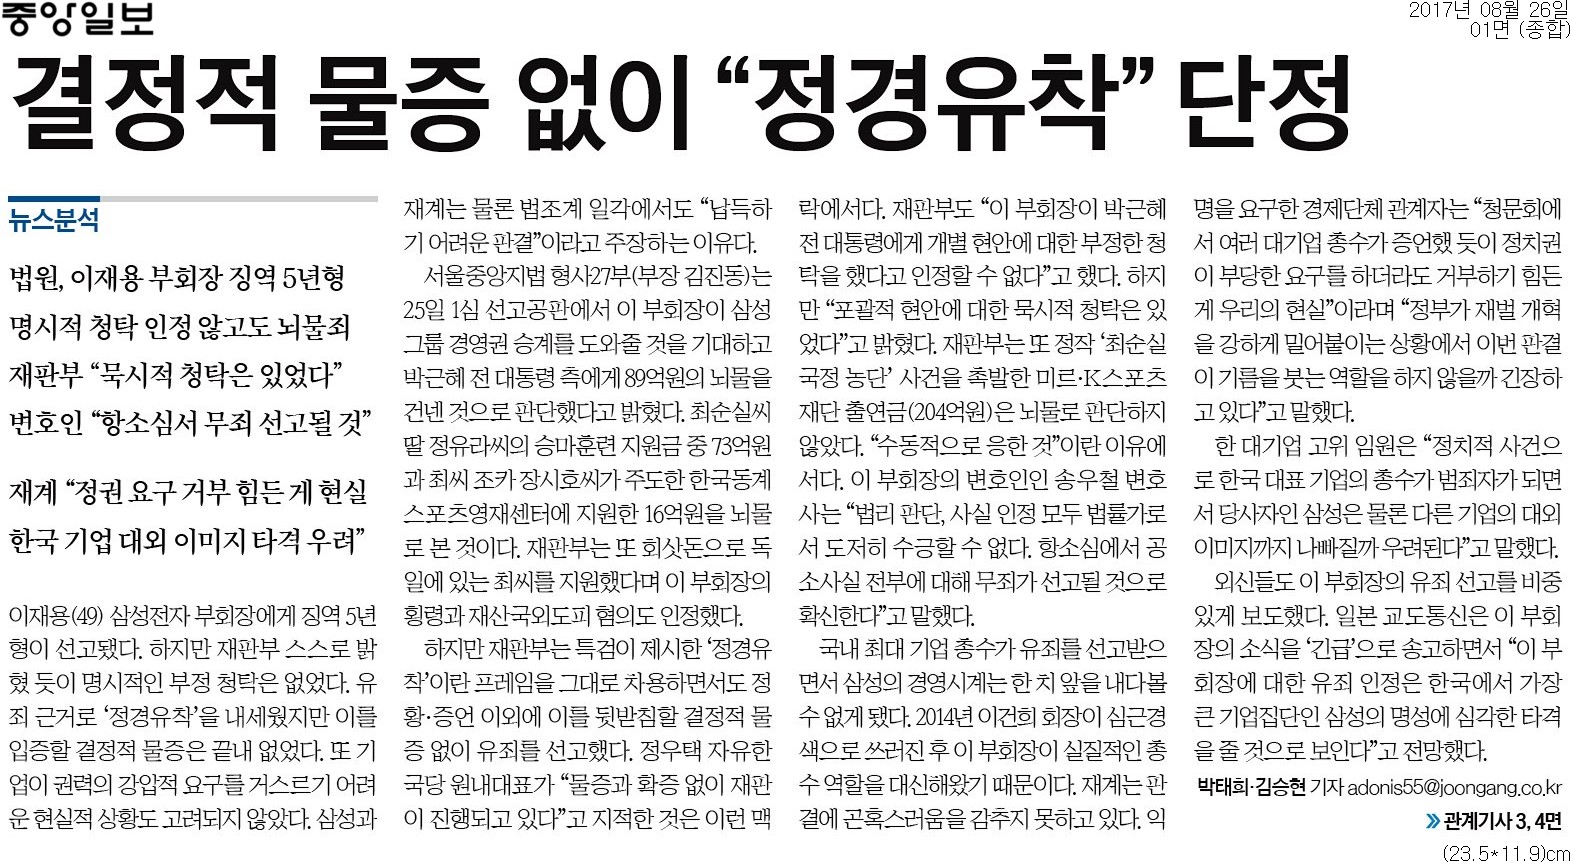 ▲ 중앙일보 1면 기사